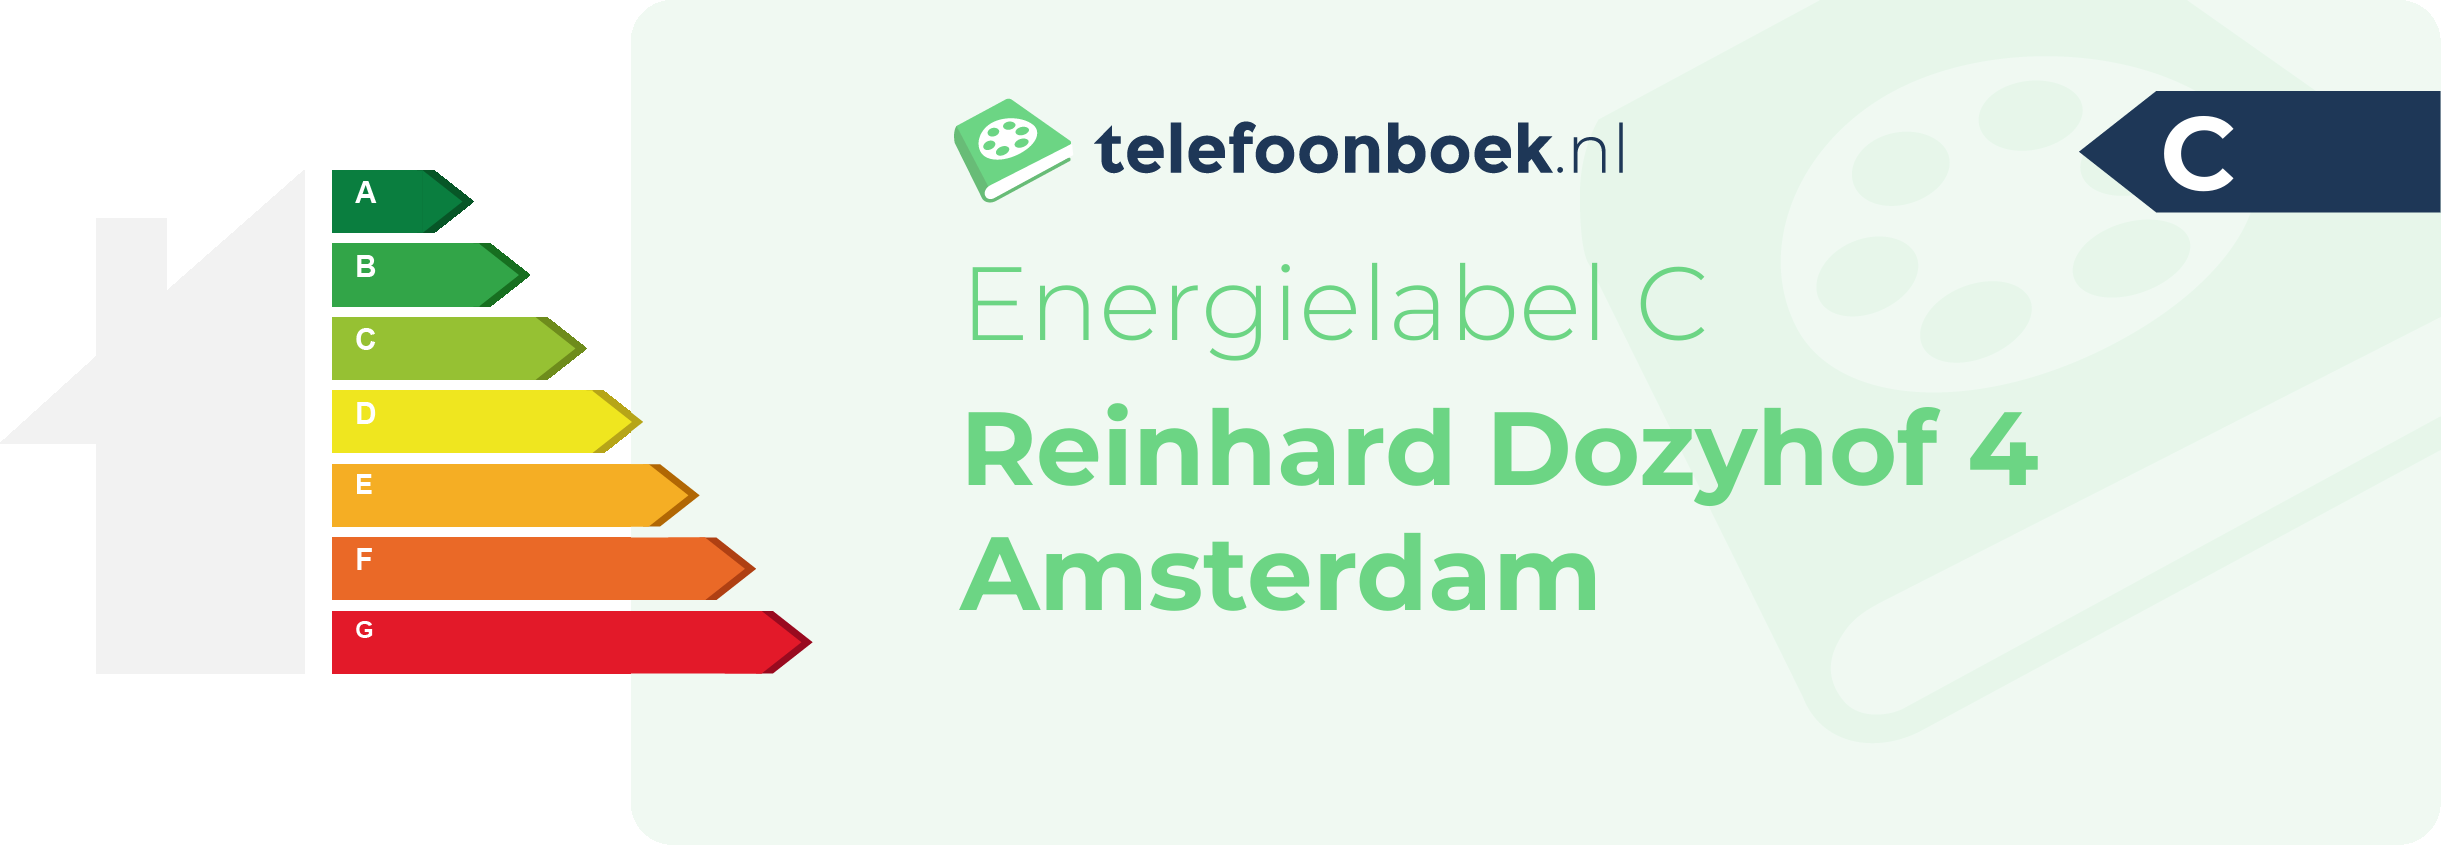 Energielabel Reinhard Dozyhof 4 Amsterdam